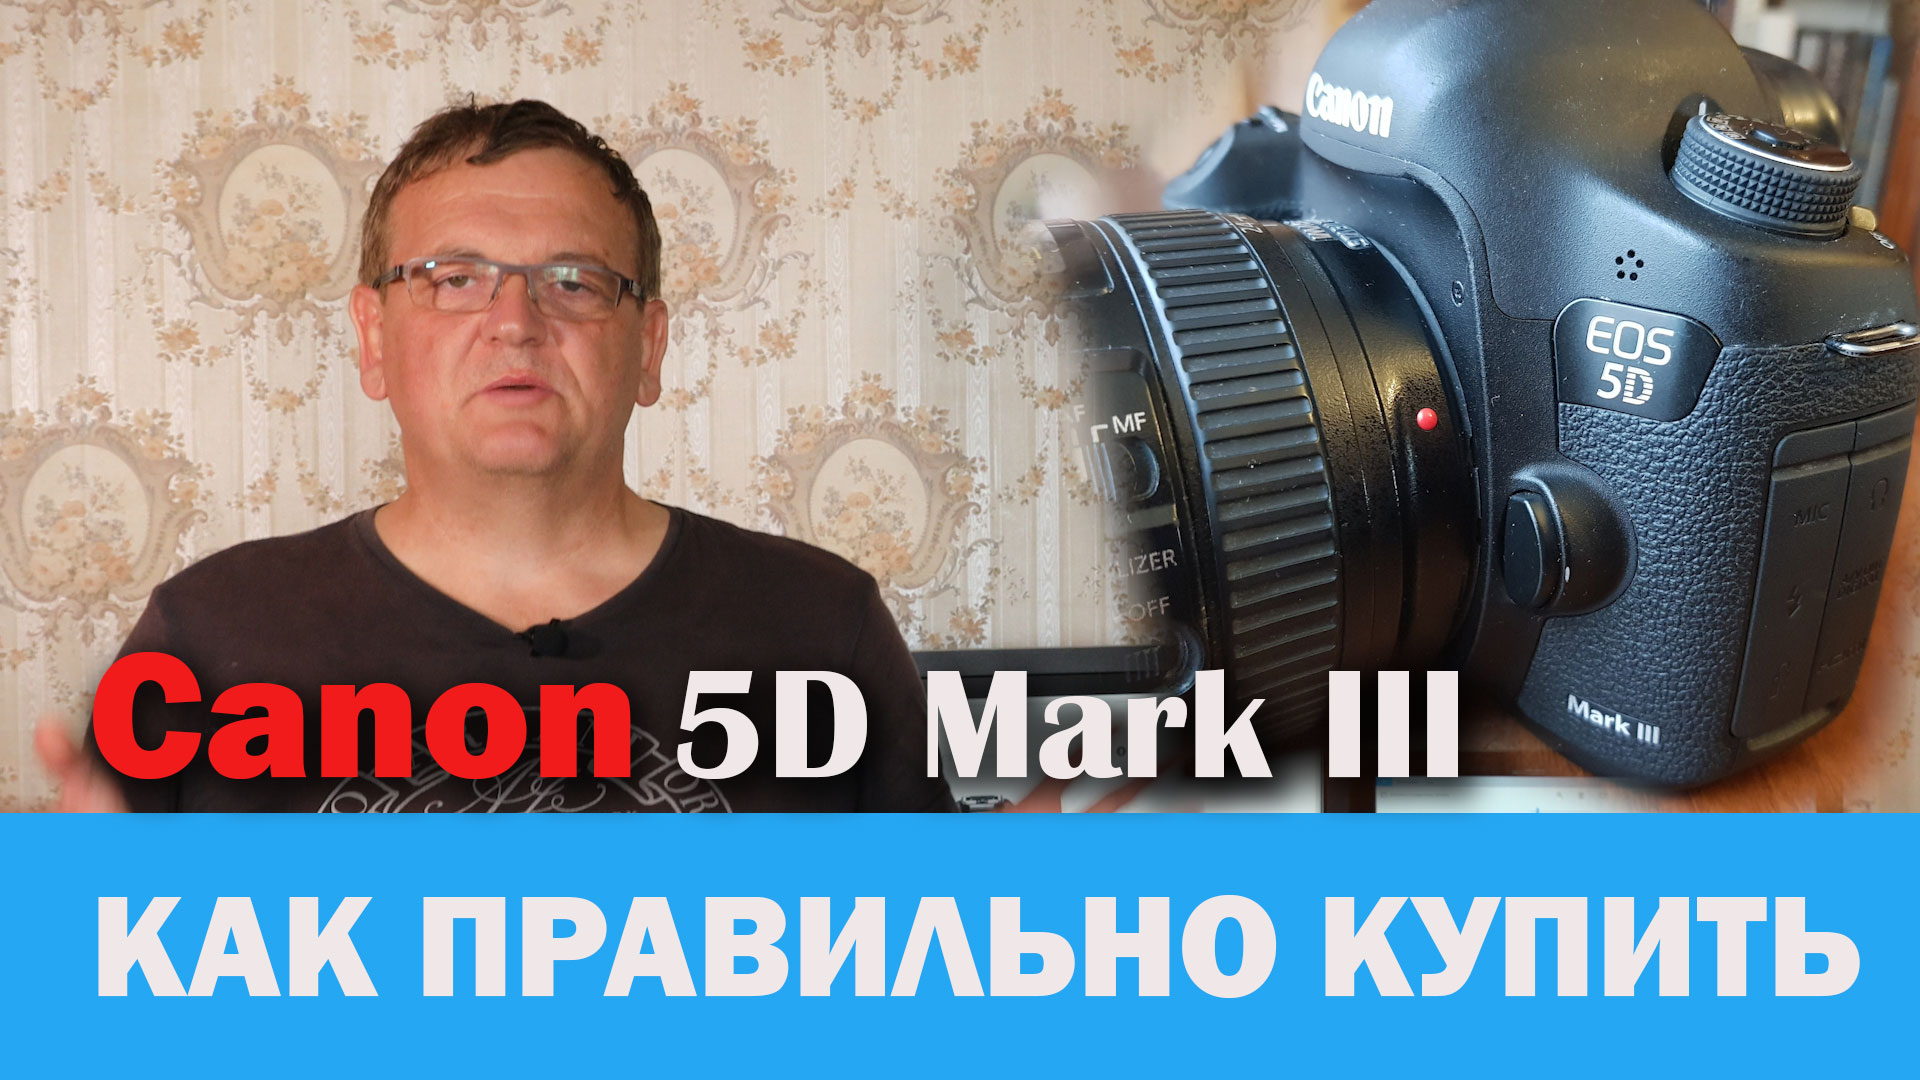 Вы сейчас просматриваете Как правильно купить / продать Canon 5D Mark III